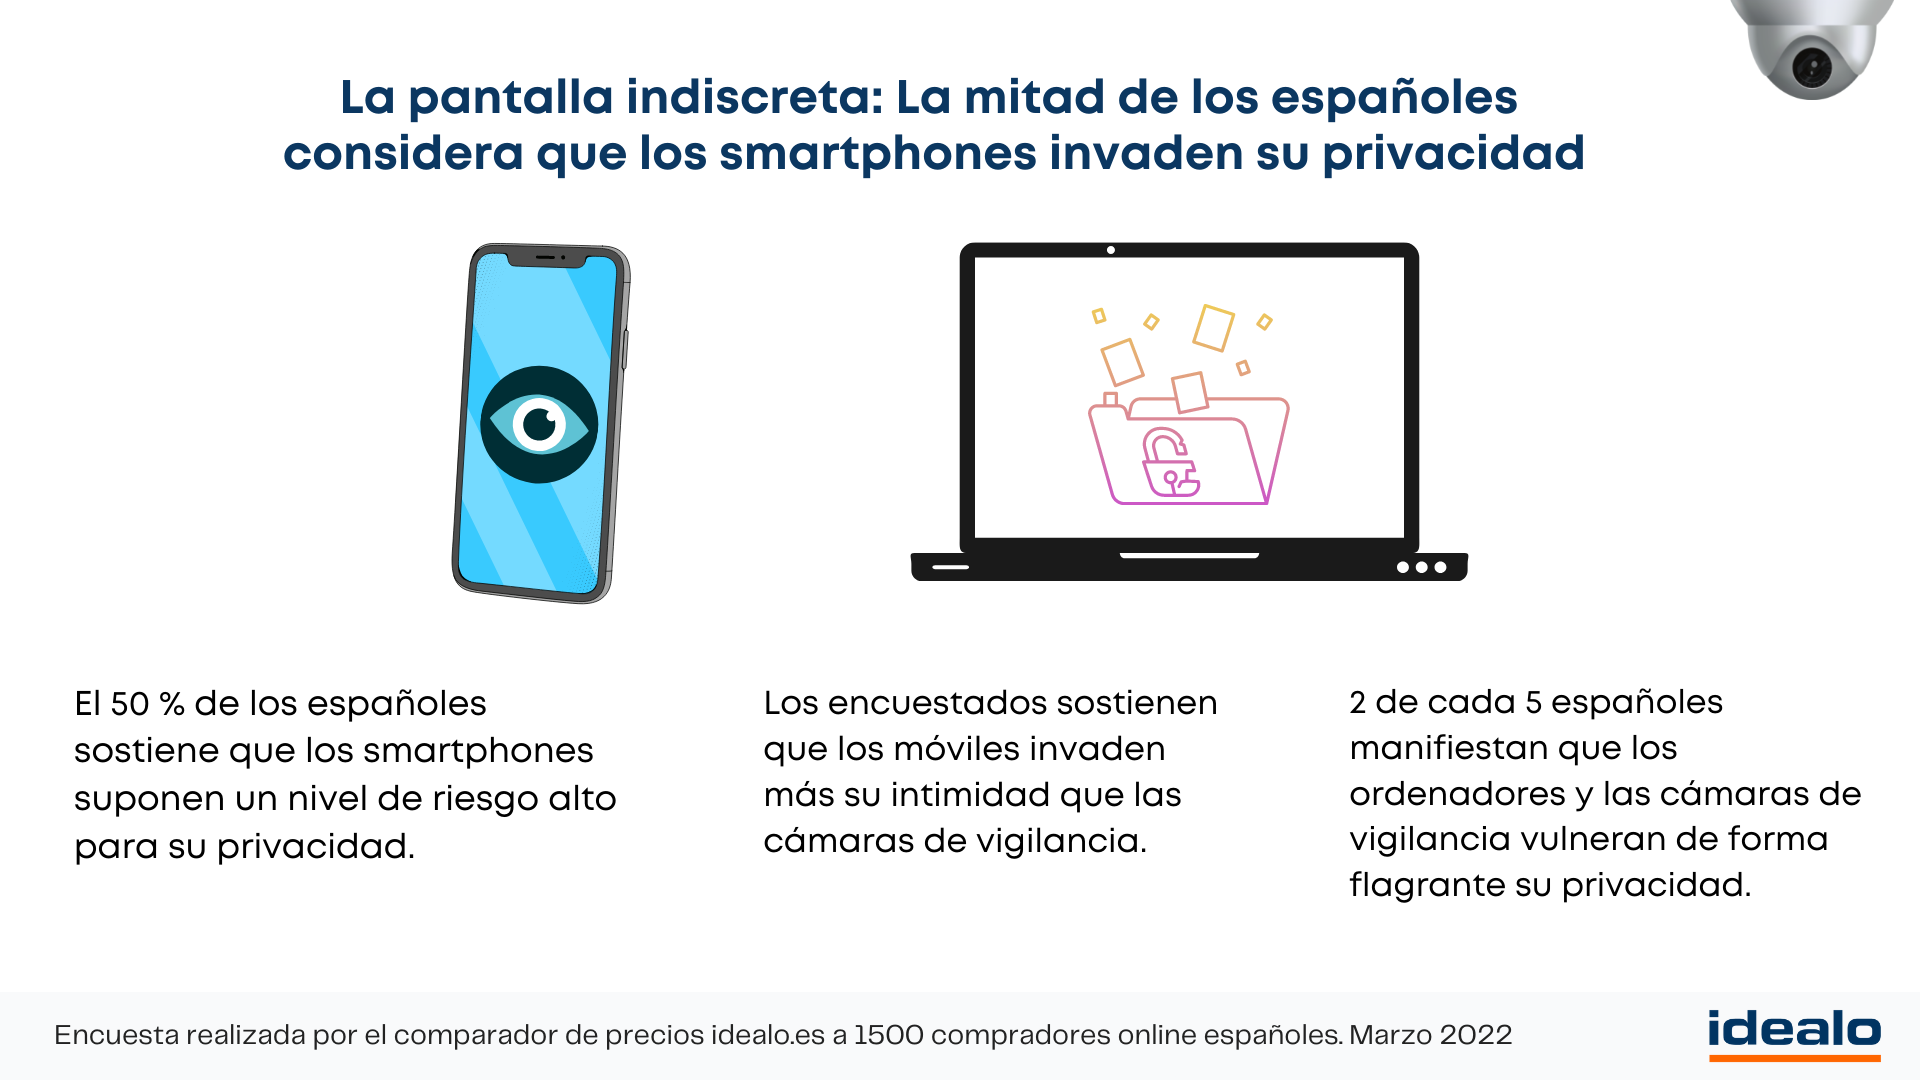 La pantalla indiscreta: La mitad de los españoles considera que los smartphones invaden su privacidad